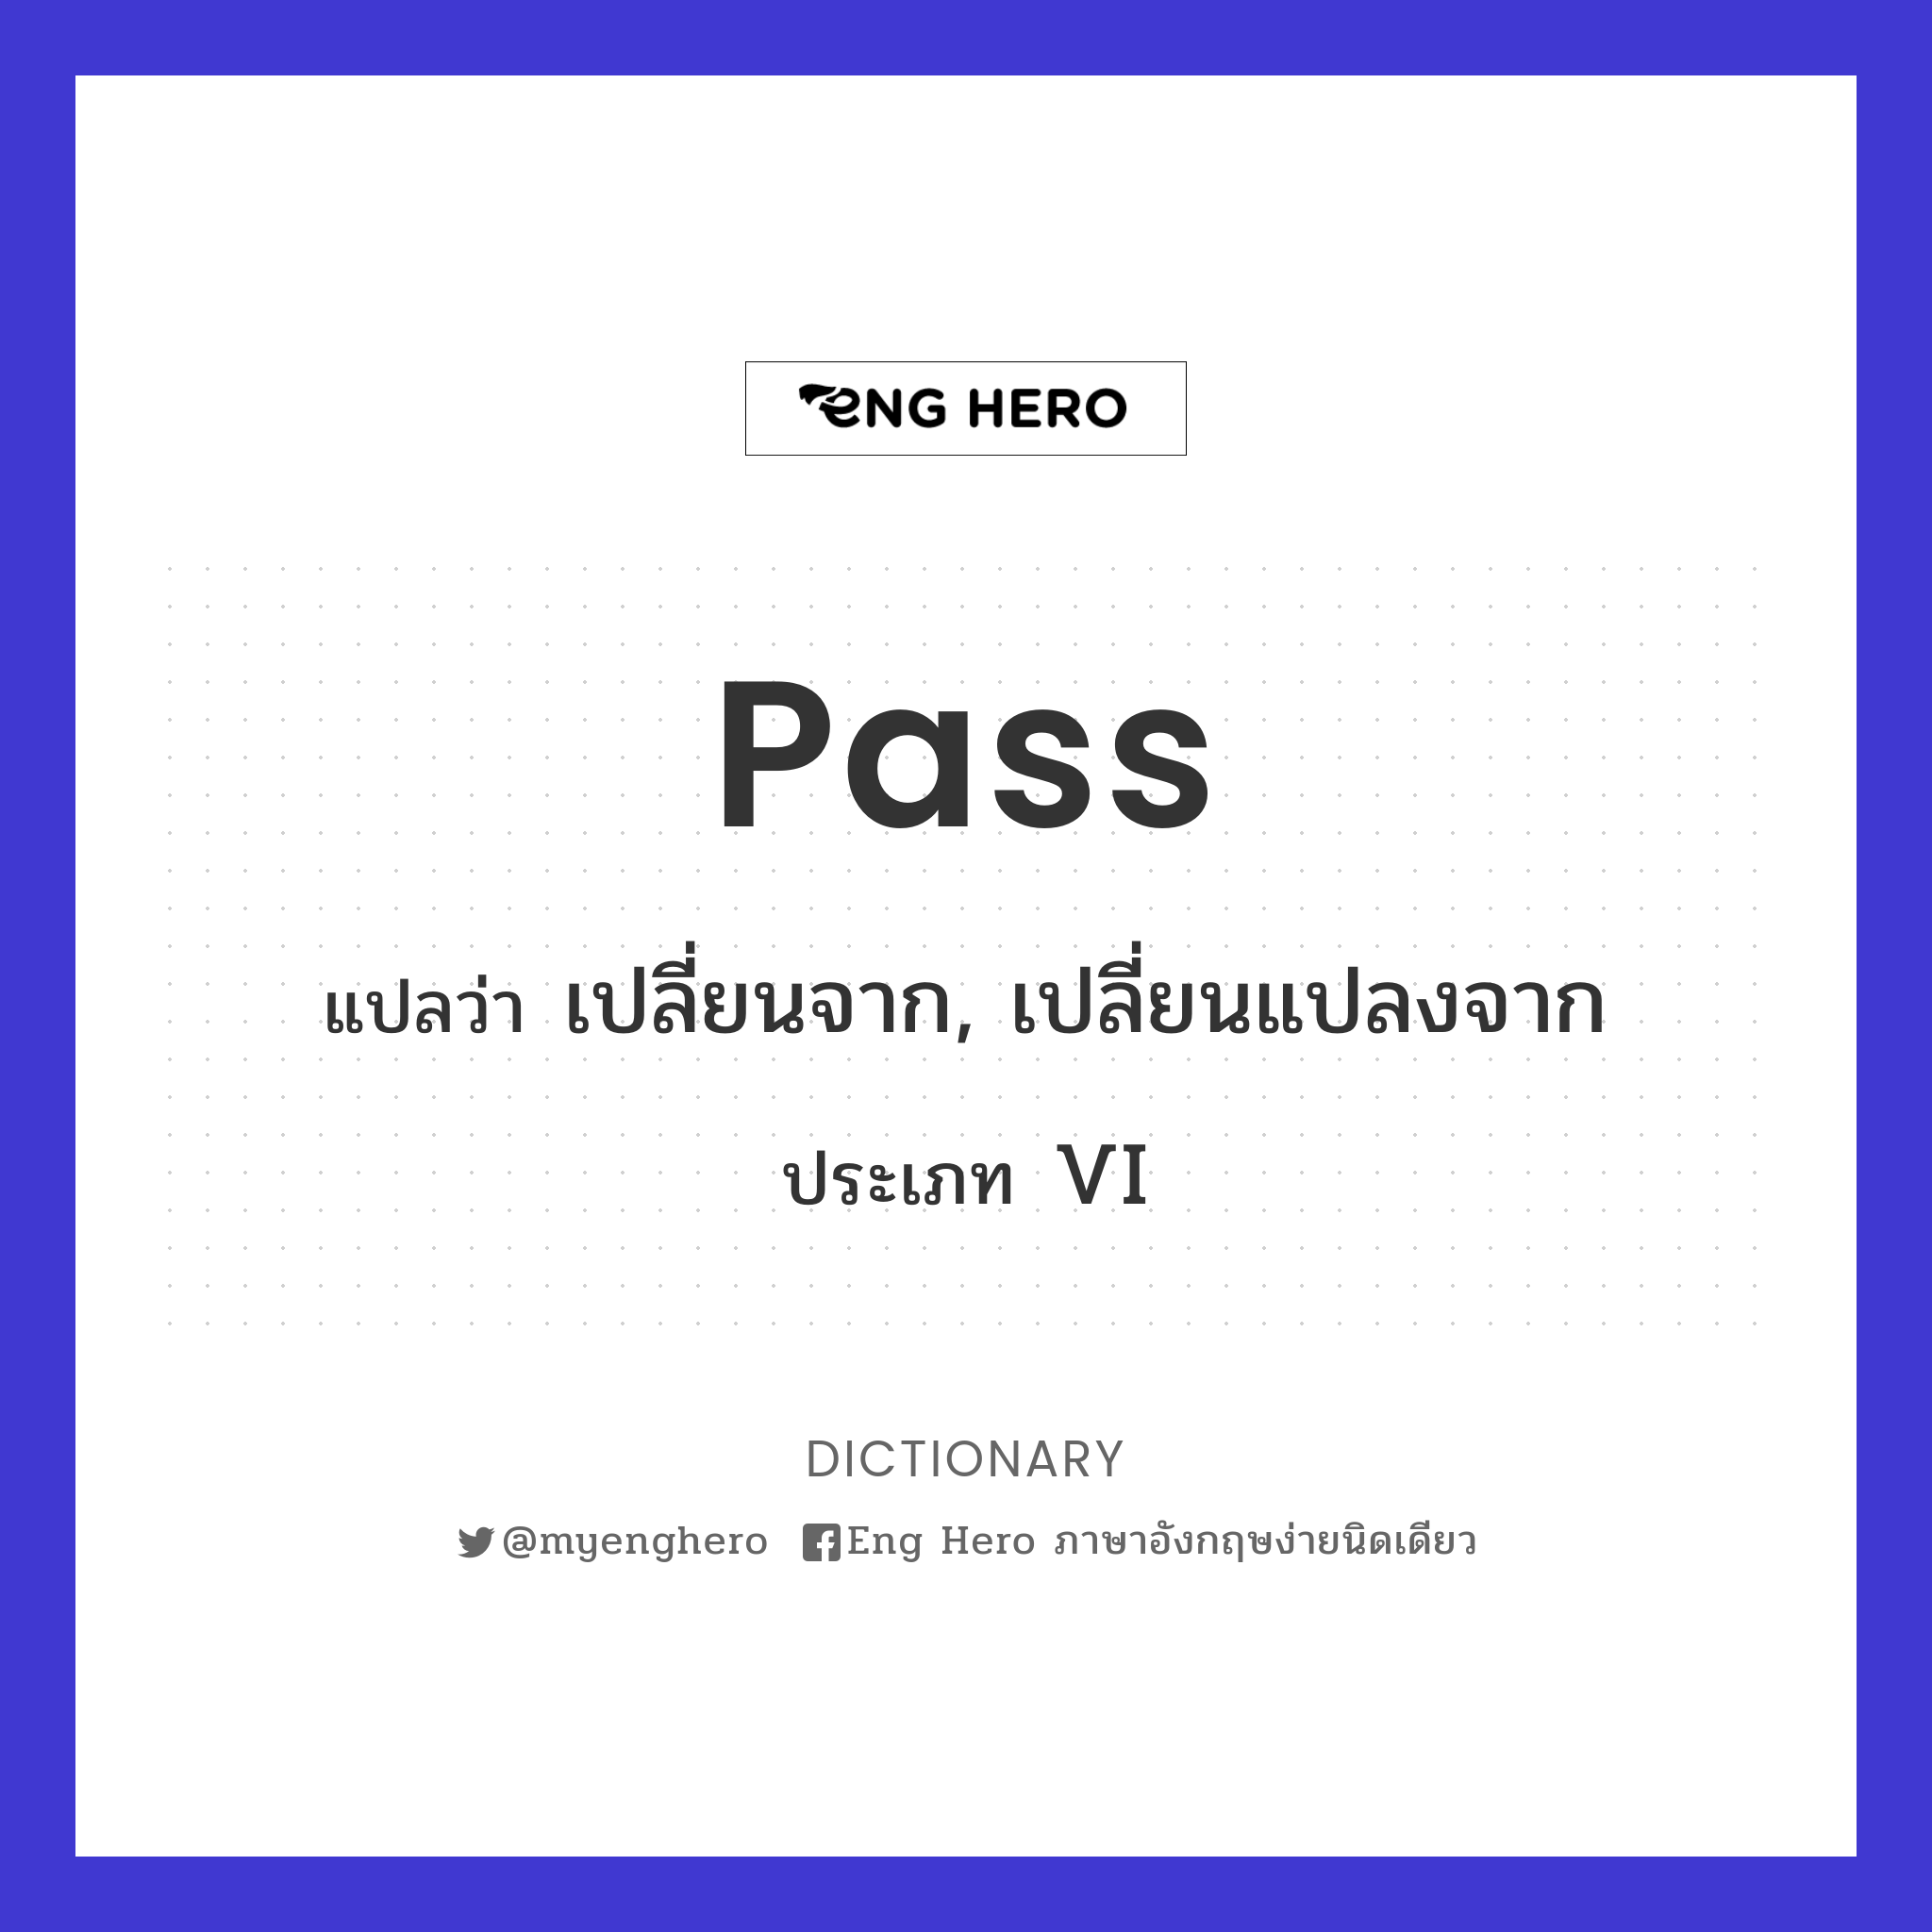 pass